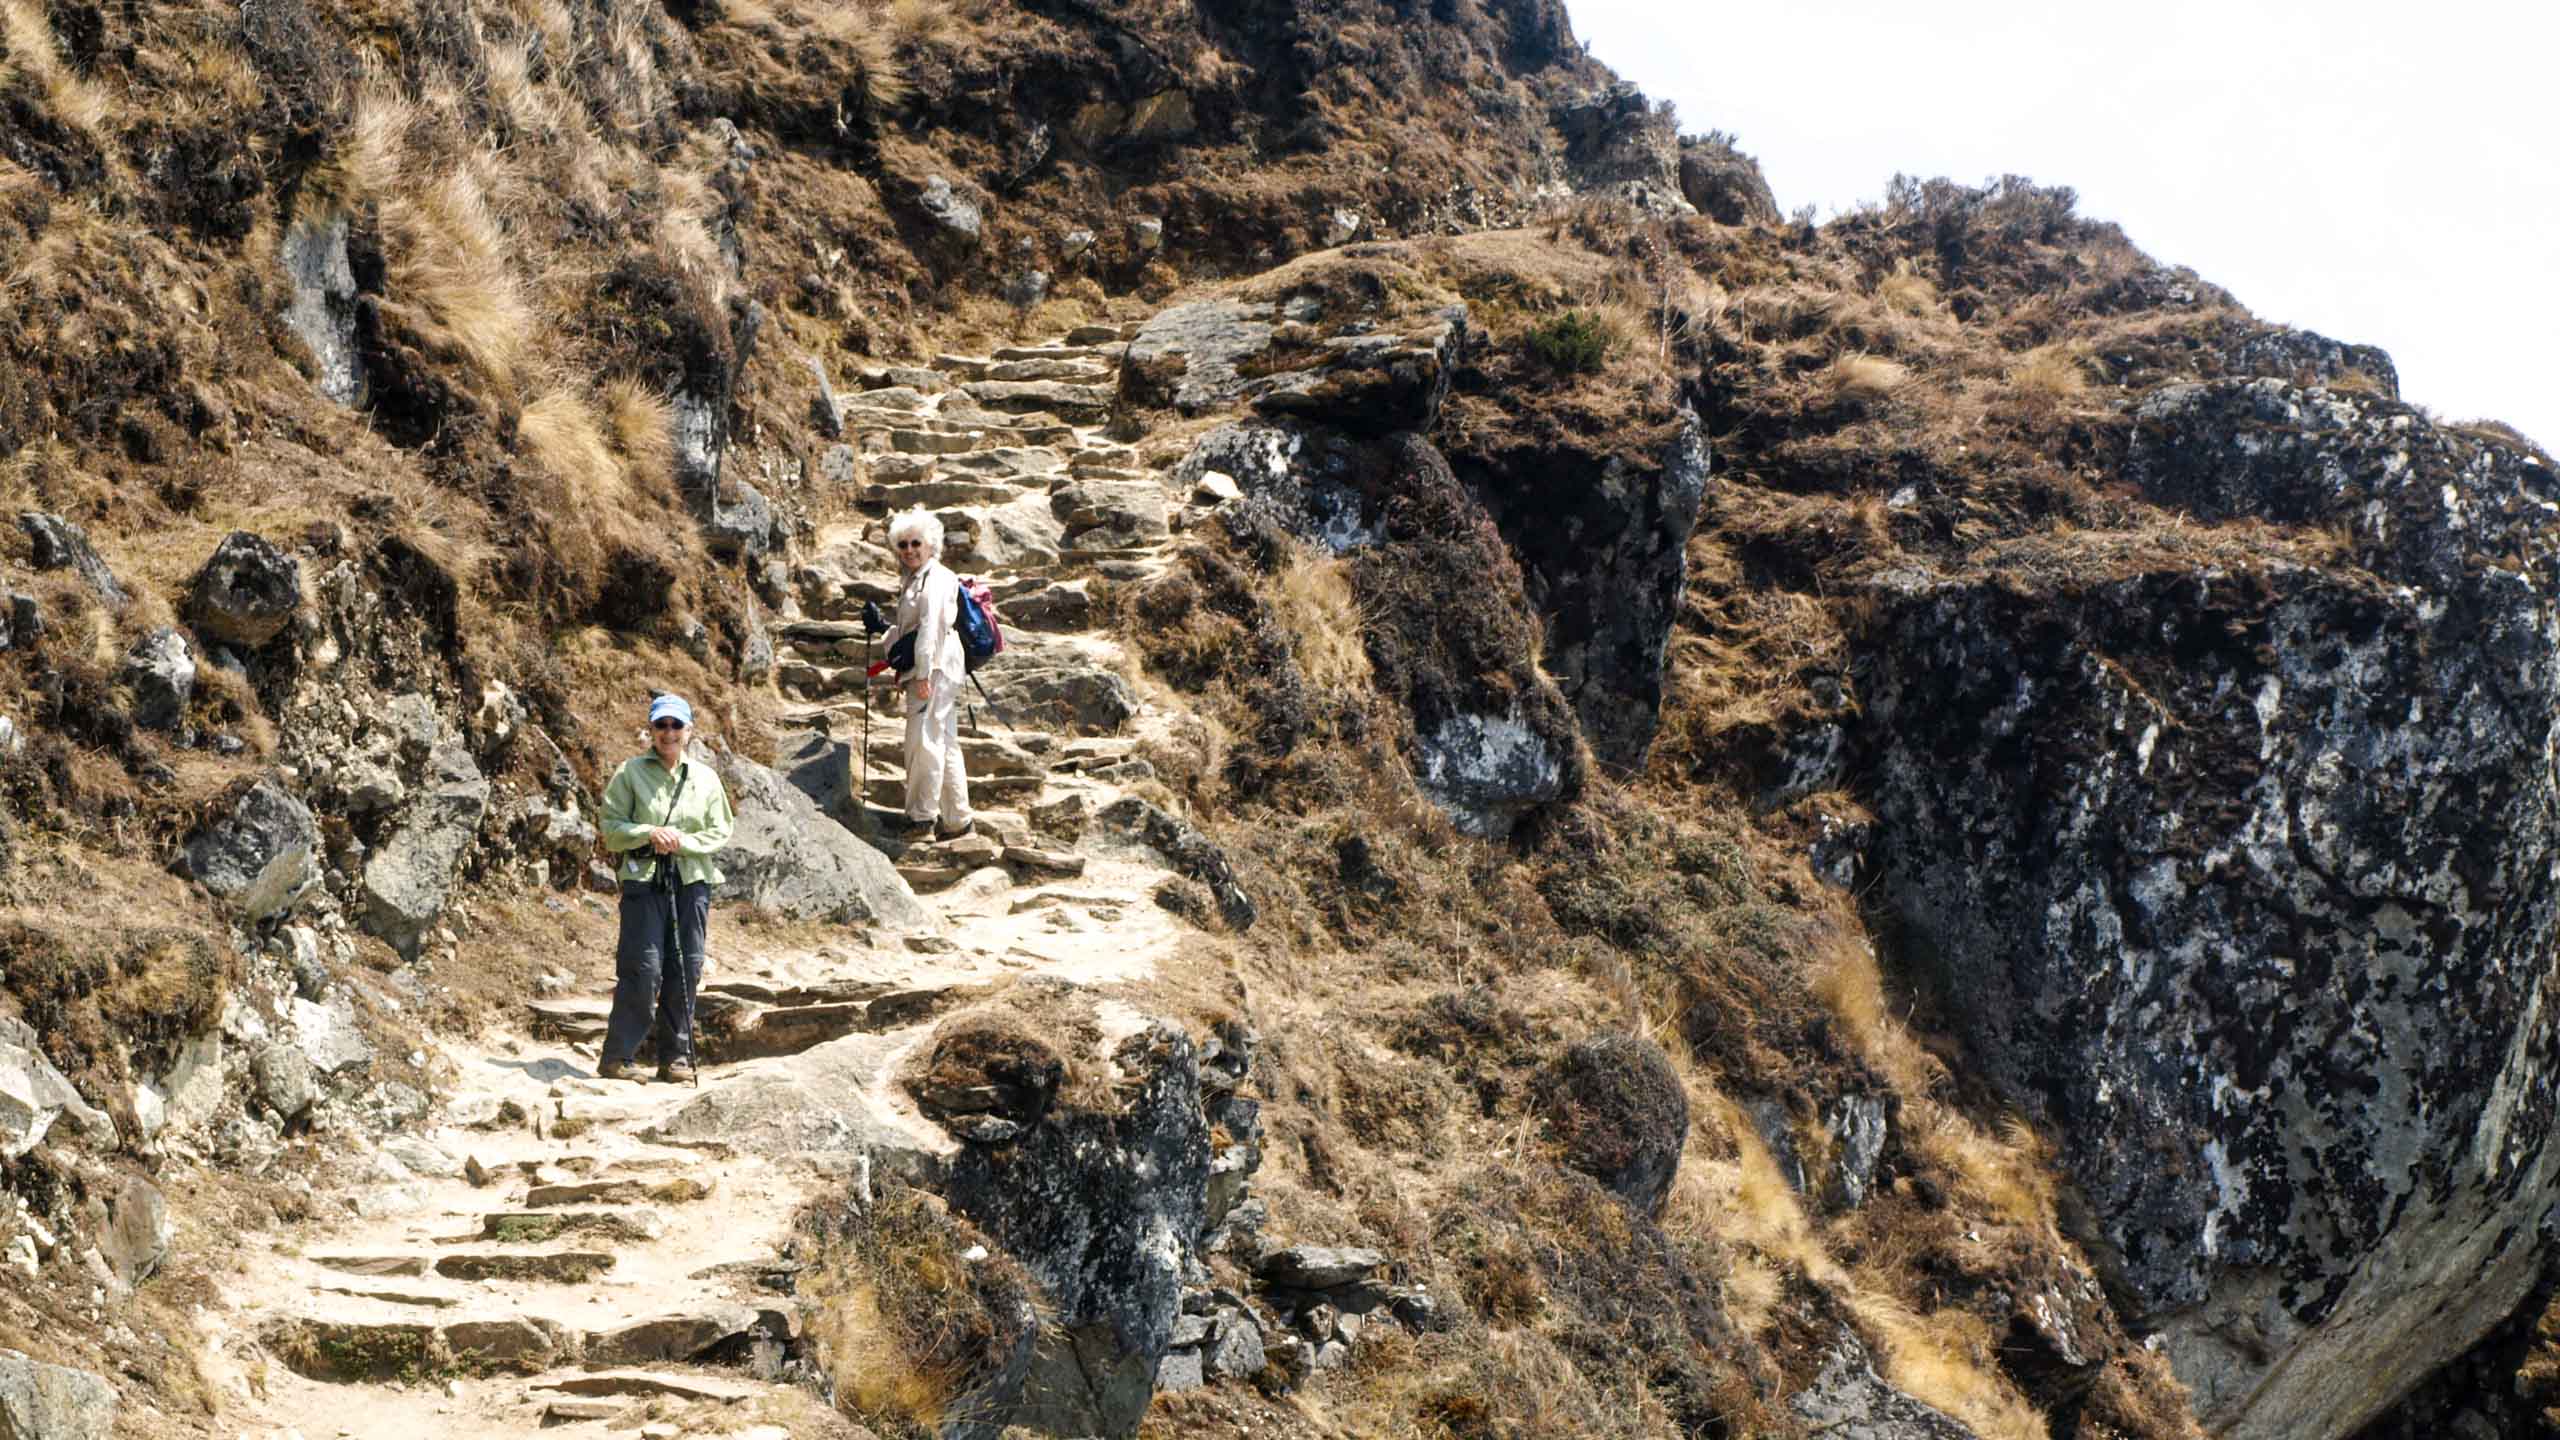 Nepal hikers climb cliffside trail